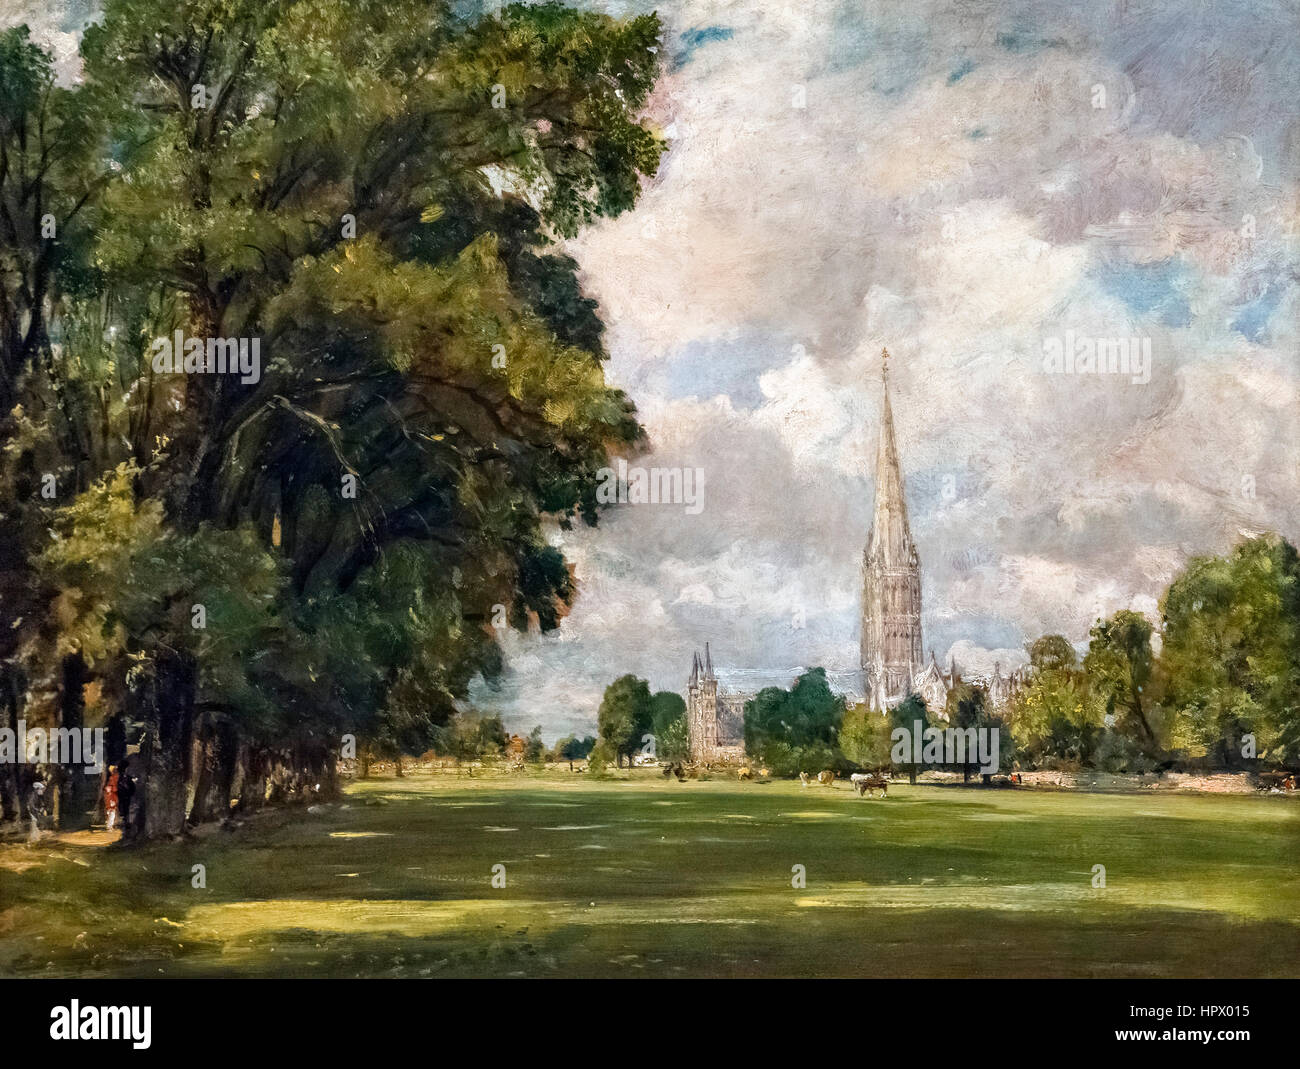 Le gendarme de la peinture. 'Salisbury Cathédrale depuis près de marais inférieur' de John Constable, huile sur toile, 1820. Banque D'Images